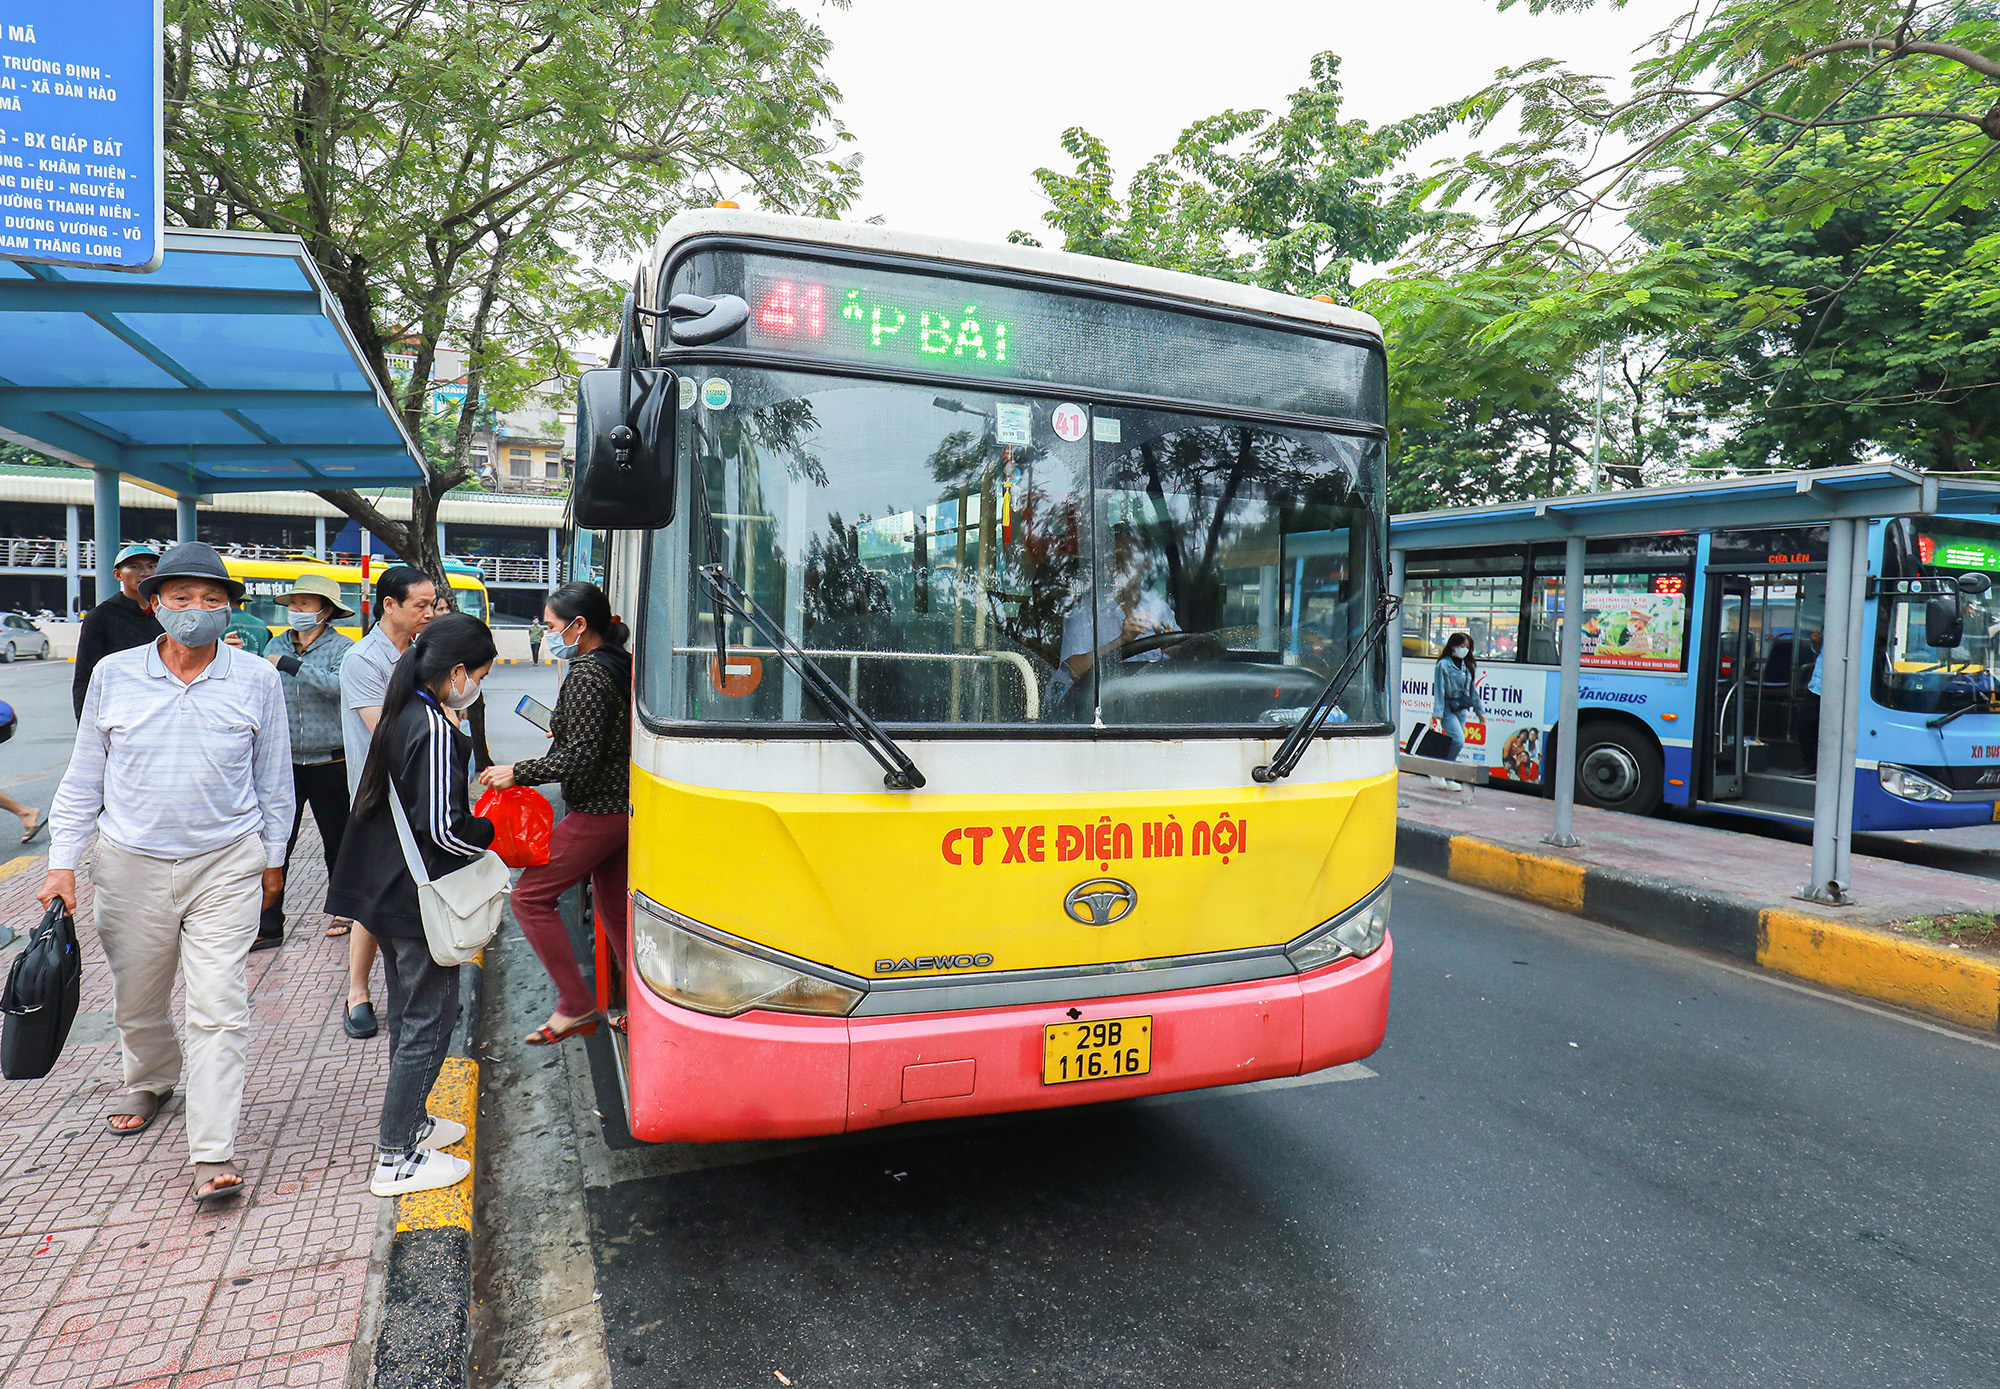 Hà Nội: Tăng giá vé xe buýt, chất lượng dịch vụ có tăng? - Ảnh 1.